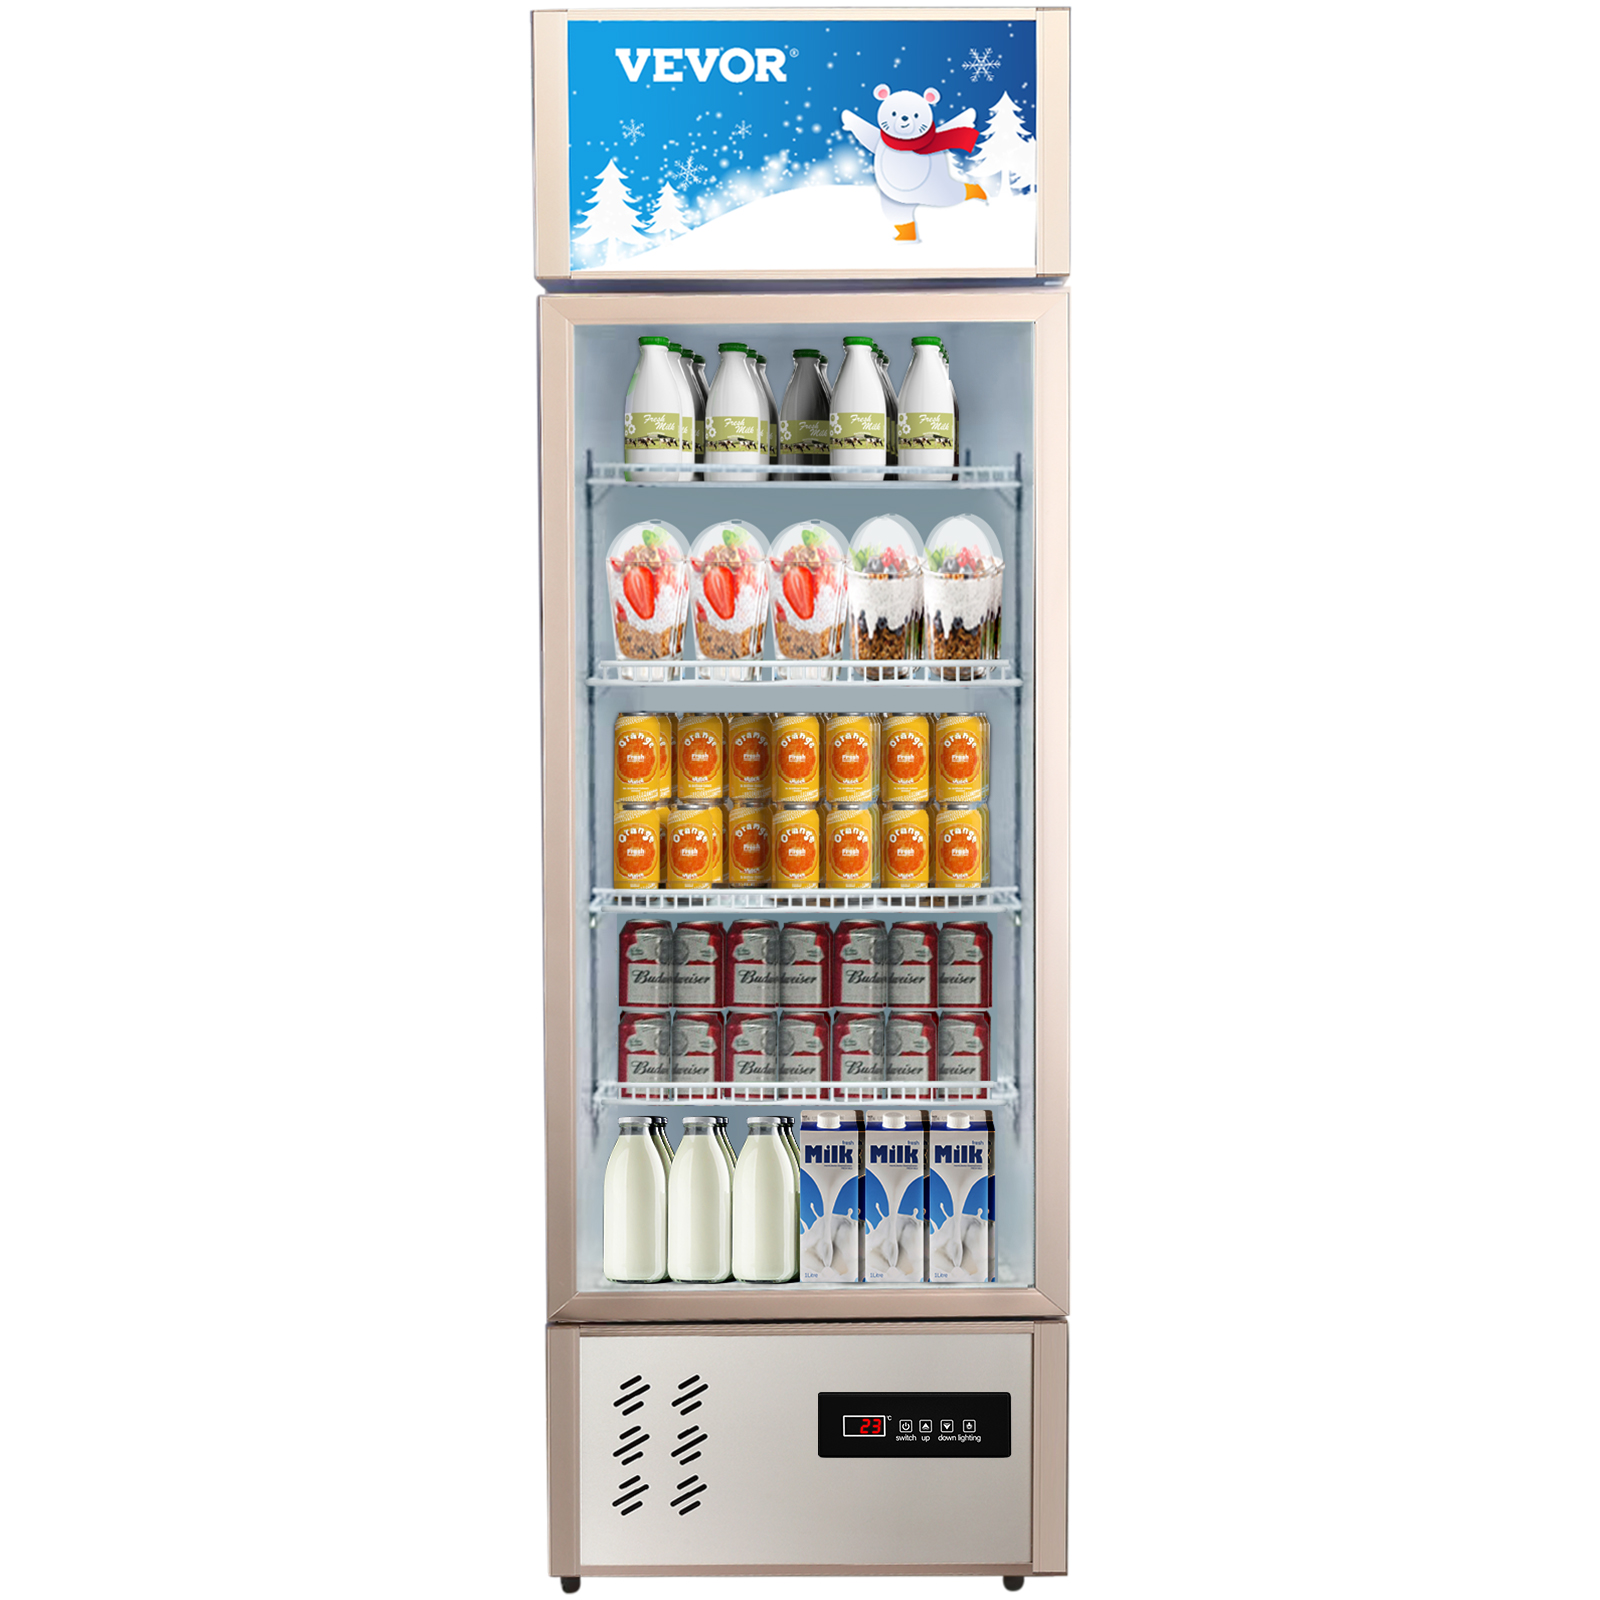 VEVOR Commercial Refrigerator,Display Fridge Upright Beverage Cooler, Glass  Door with LED Light for Home, Store, Gym or Office, (8 Single Swing  Door) VEVOR US